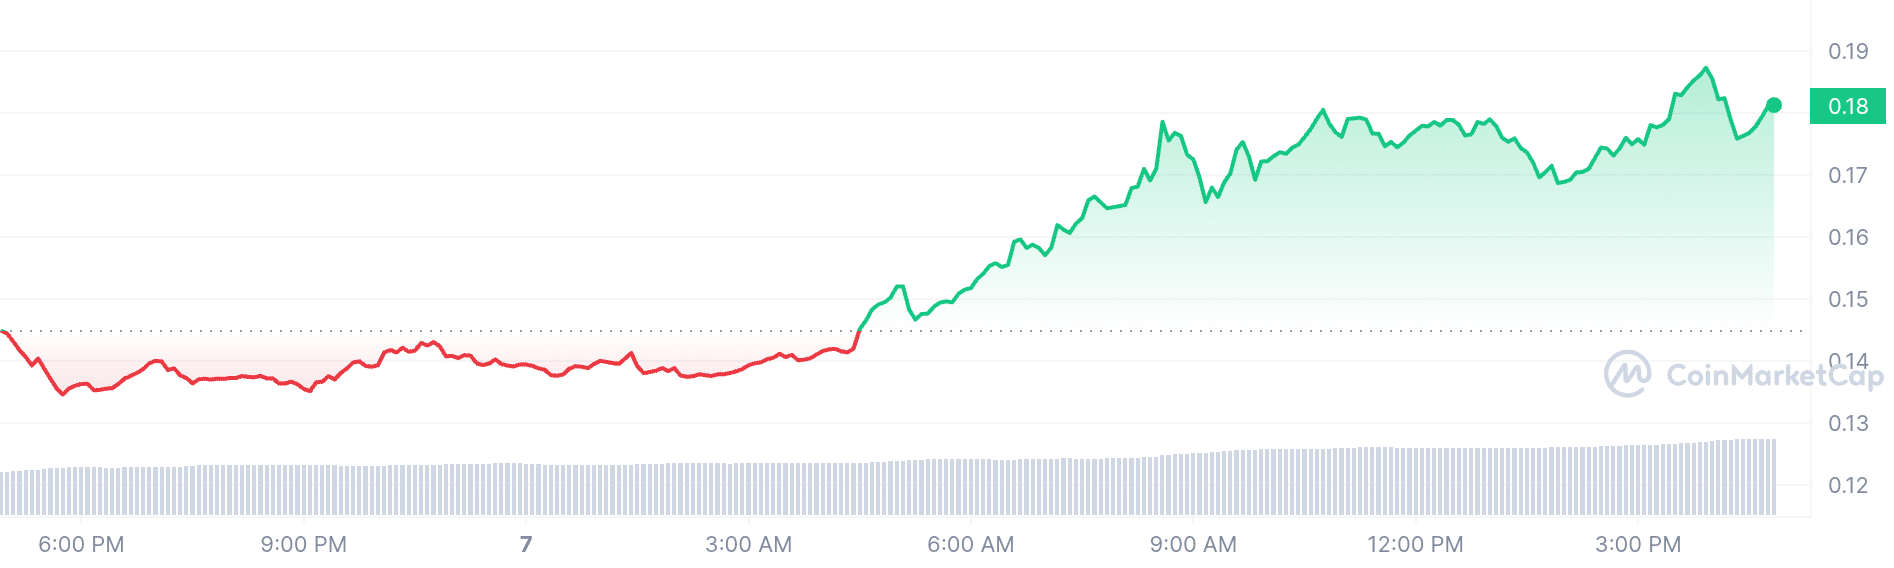 Brett price chart